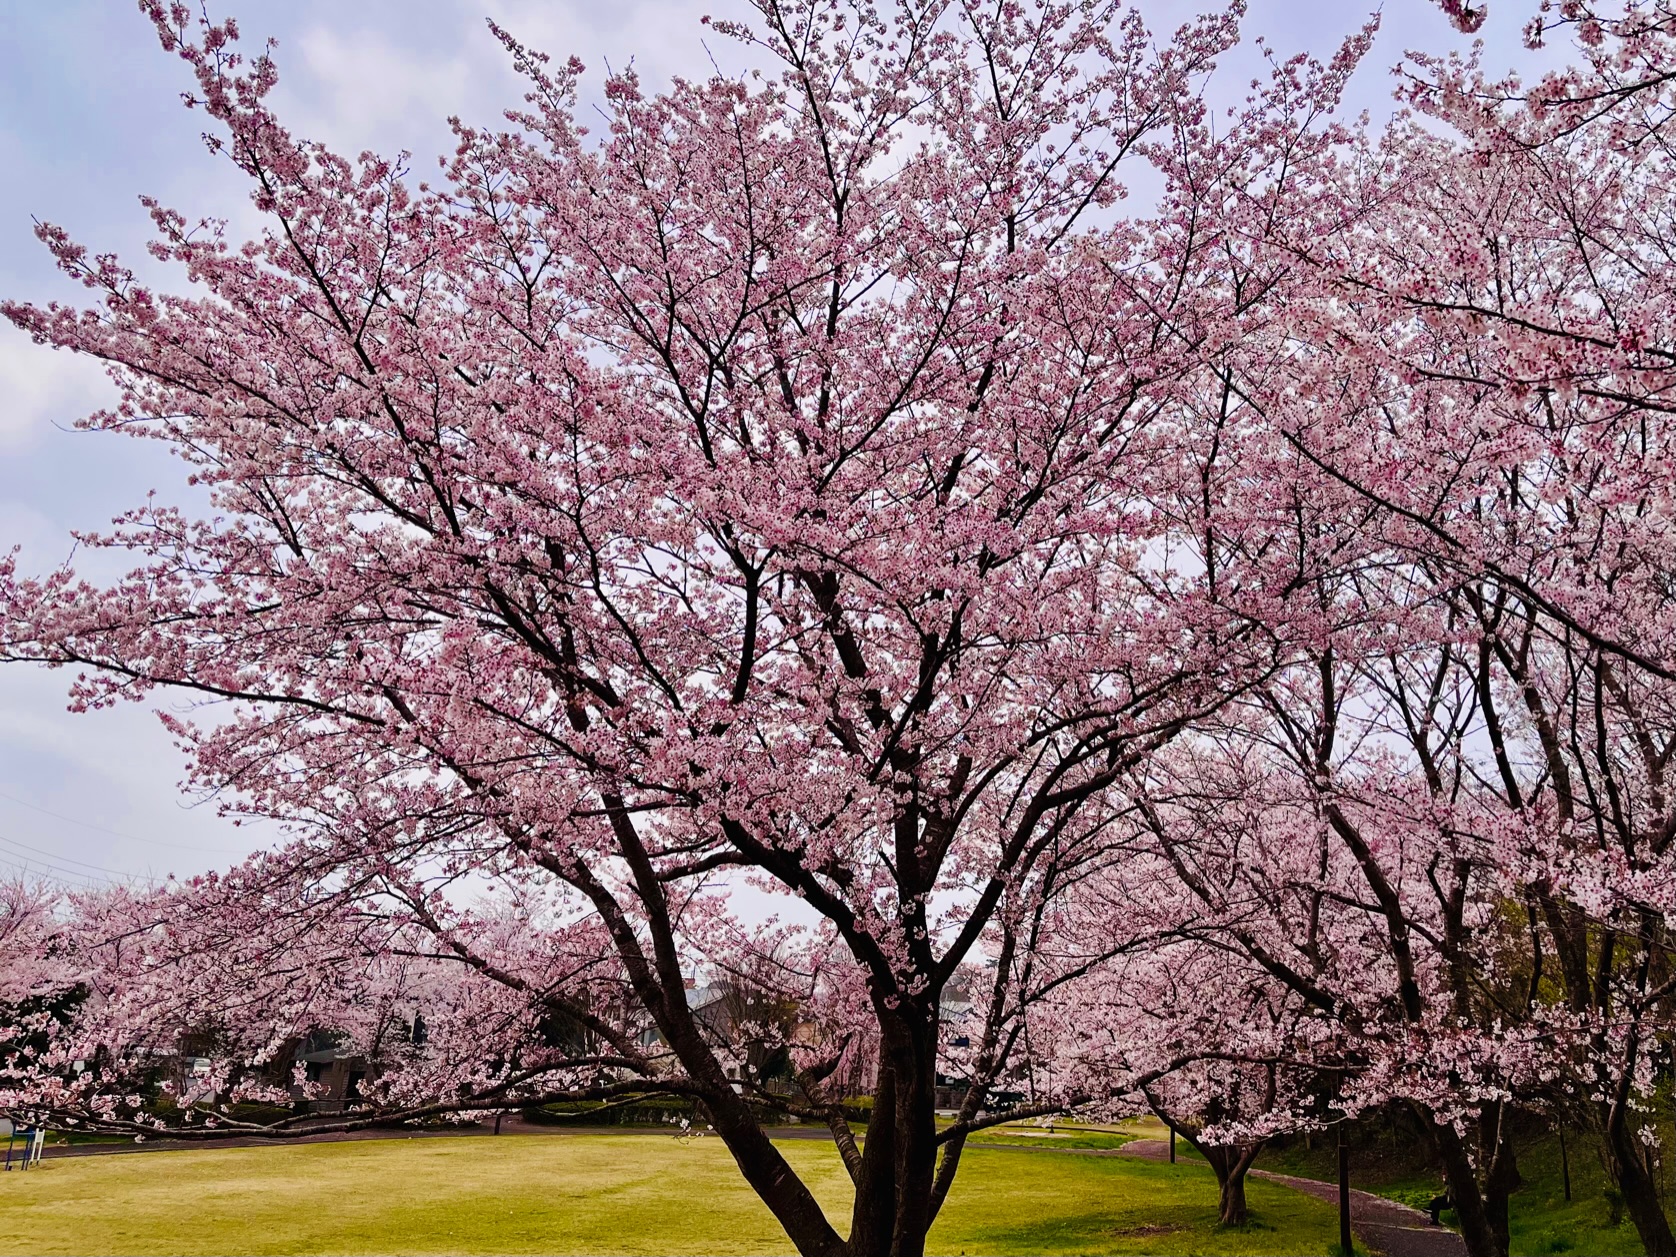 公園の桜